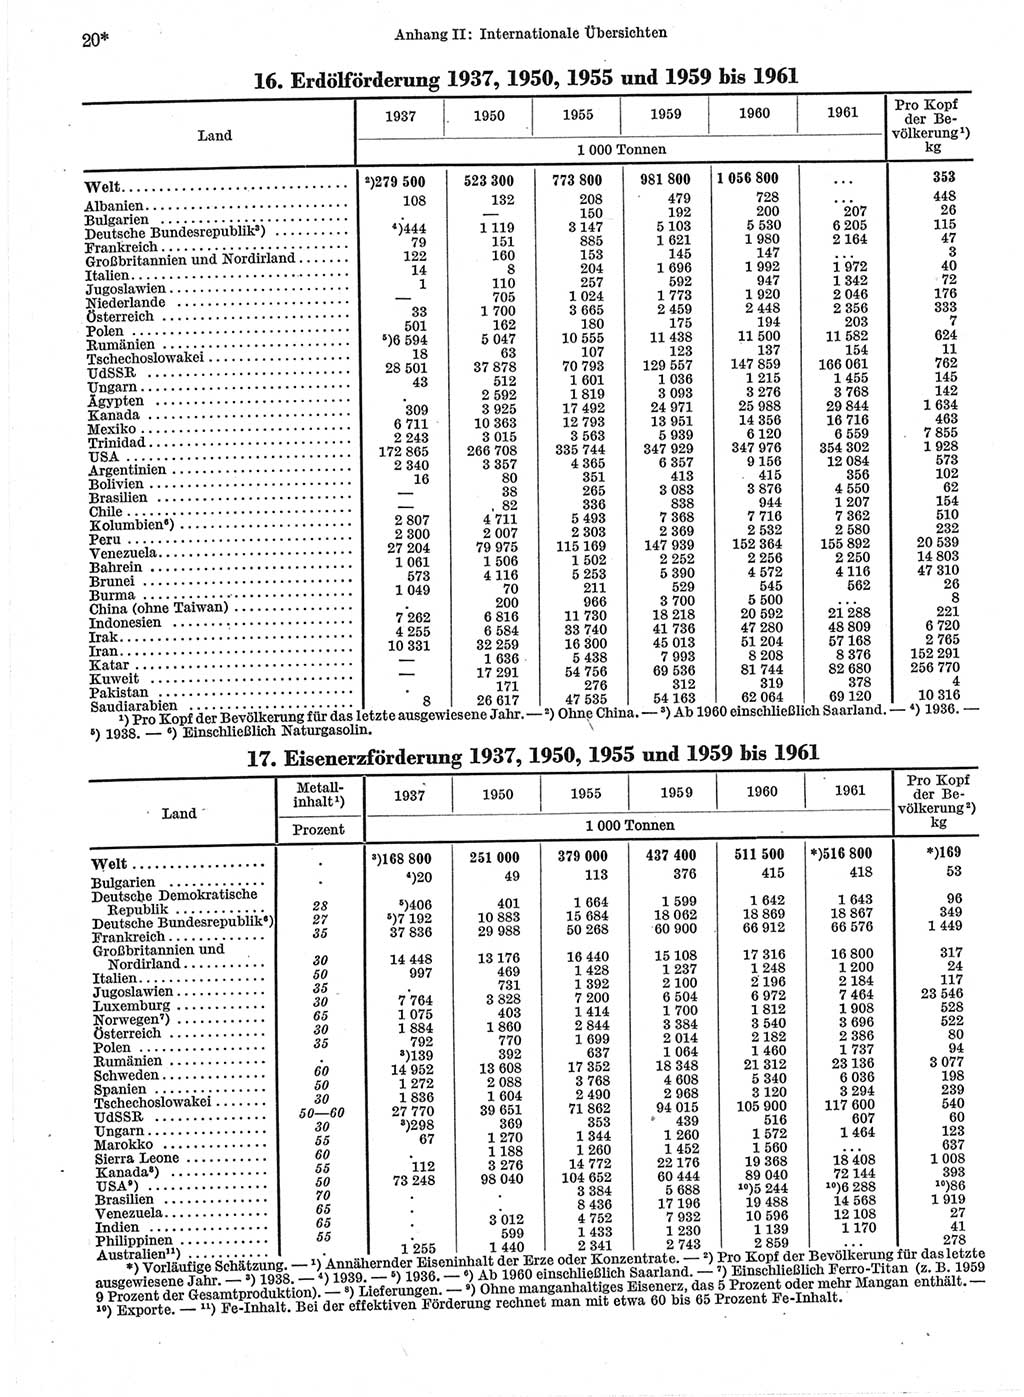 Statistisches Jahrbuch der Deutschen Demokratischen Republik (DDR) 1963, Seite 20 (Stat. Jb. DDR 1963, S. 20)